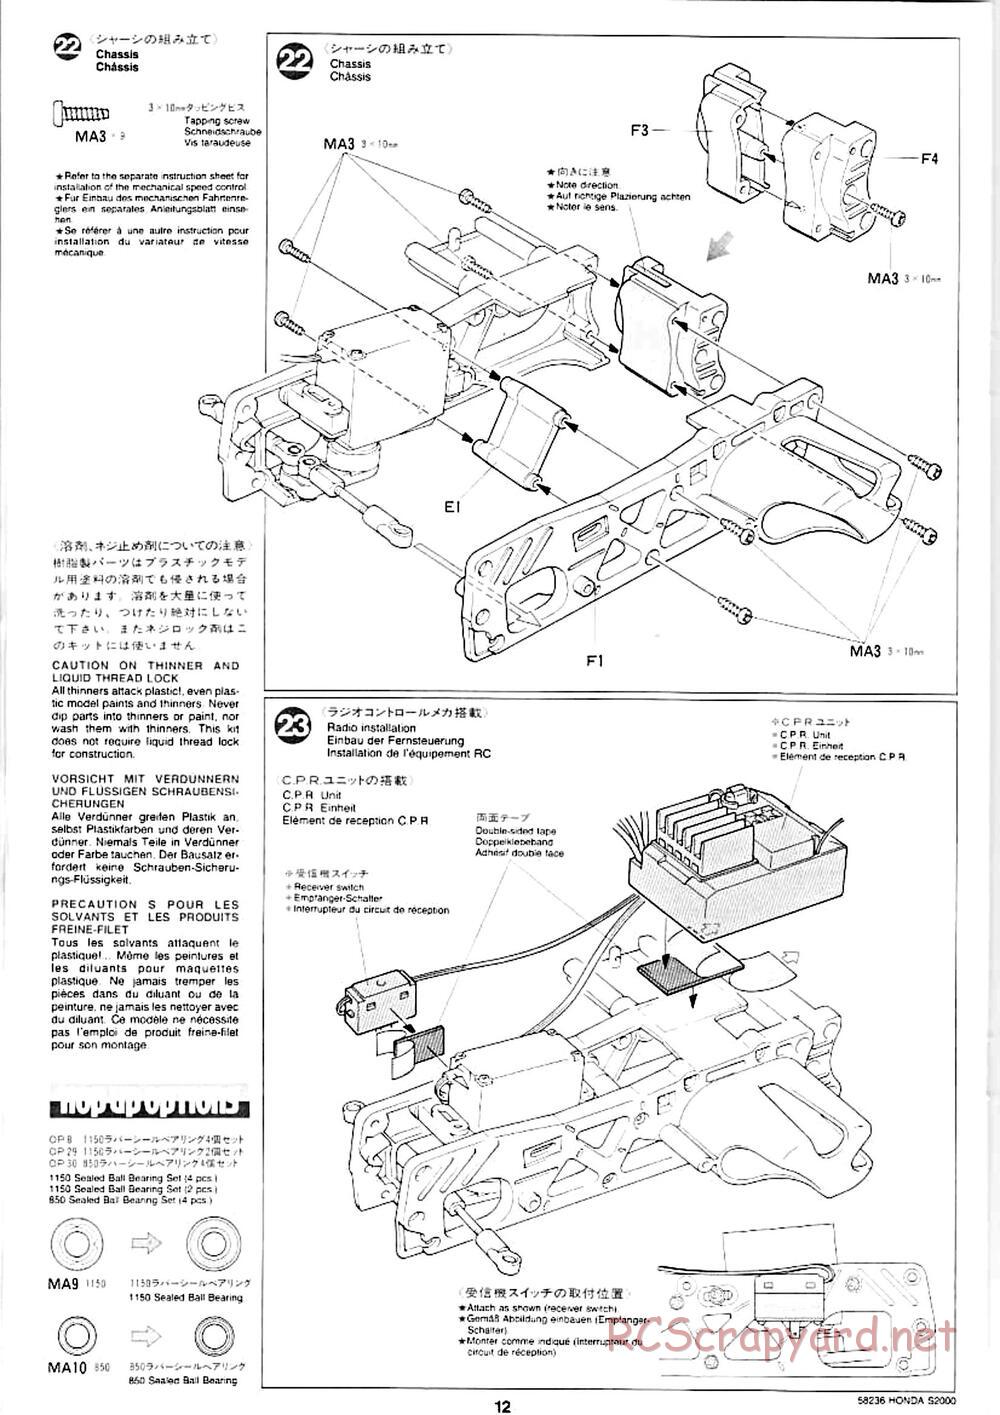 Tamiya - Honda S2000 - M04L Chassis - Manual - Page 10